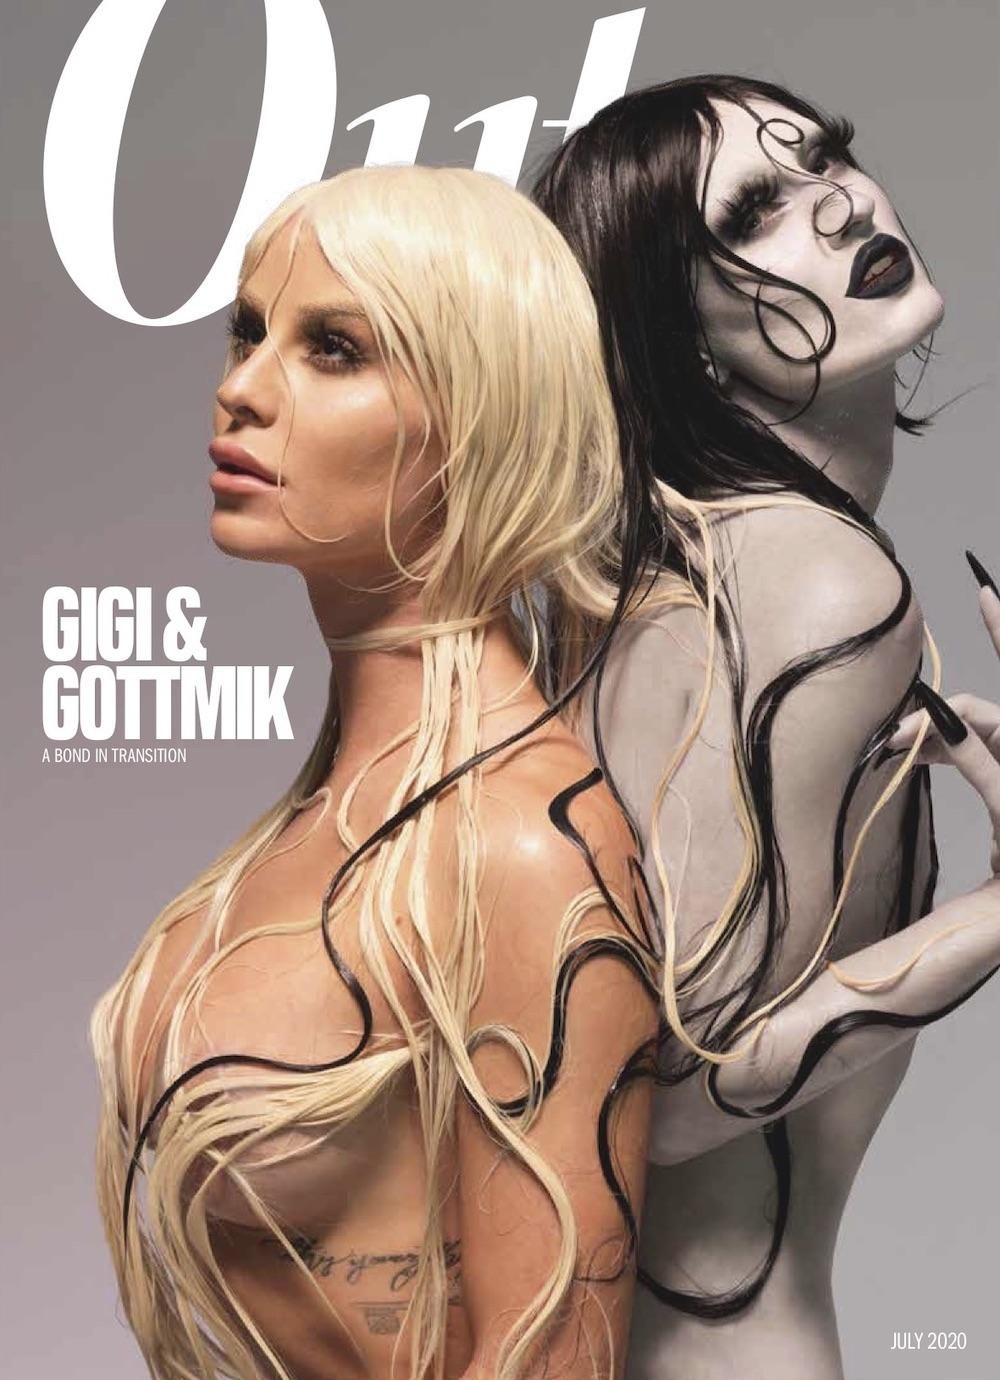 Gigi Gorgeous and GottMik Out cover